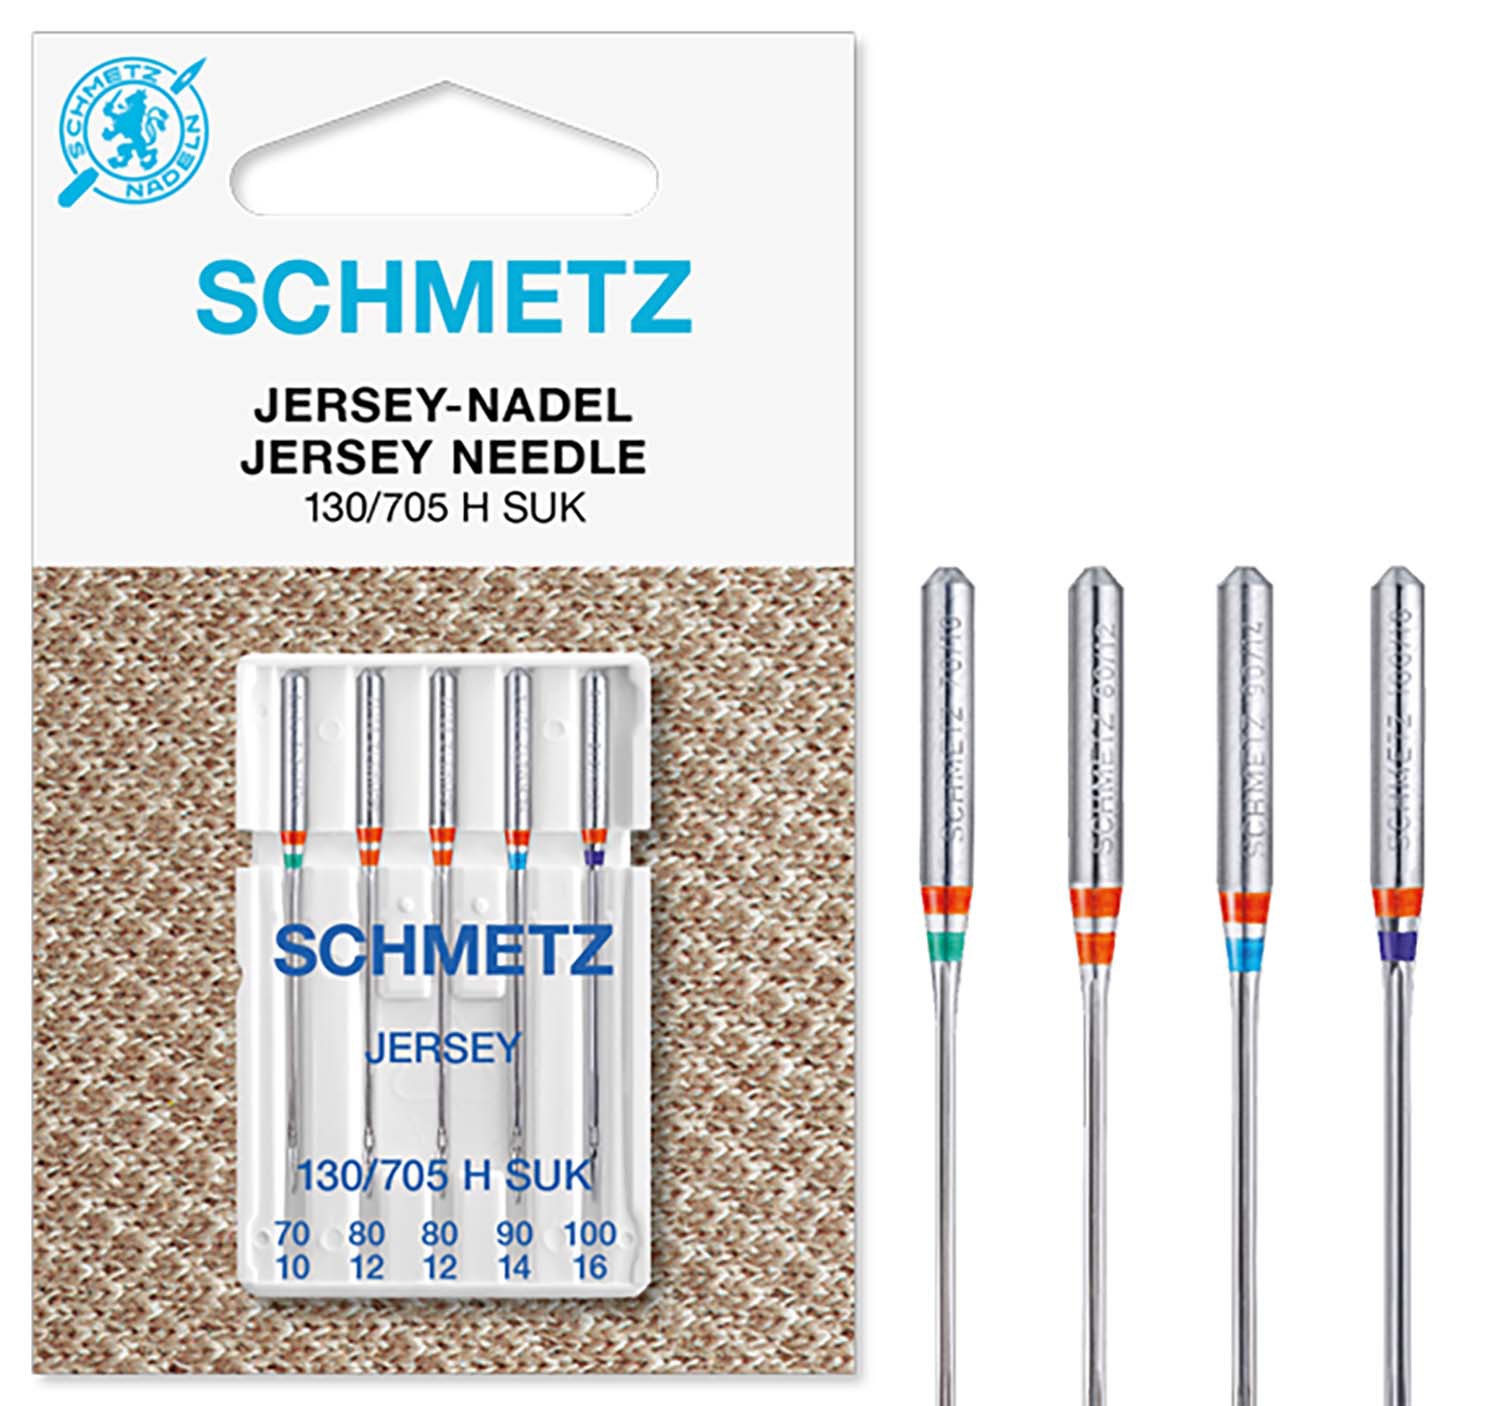 SCHMETZ Nähmaschinennadeln sortiert 5 Jersey-Nadeln 130/705 H SUK 1x 70/10, 2x 80/12, 1x 90/14 und 1x 100/16